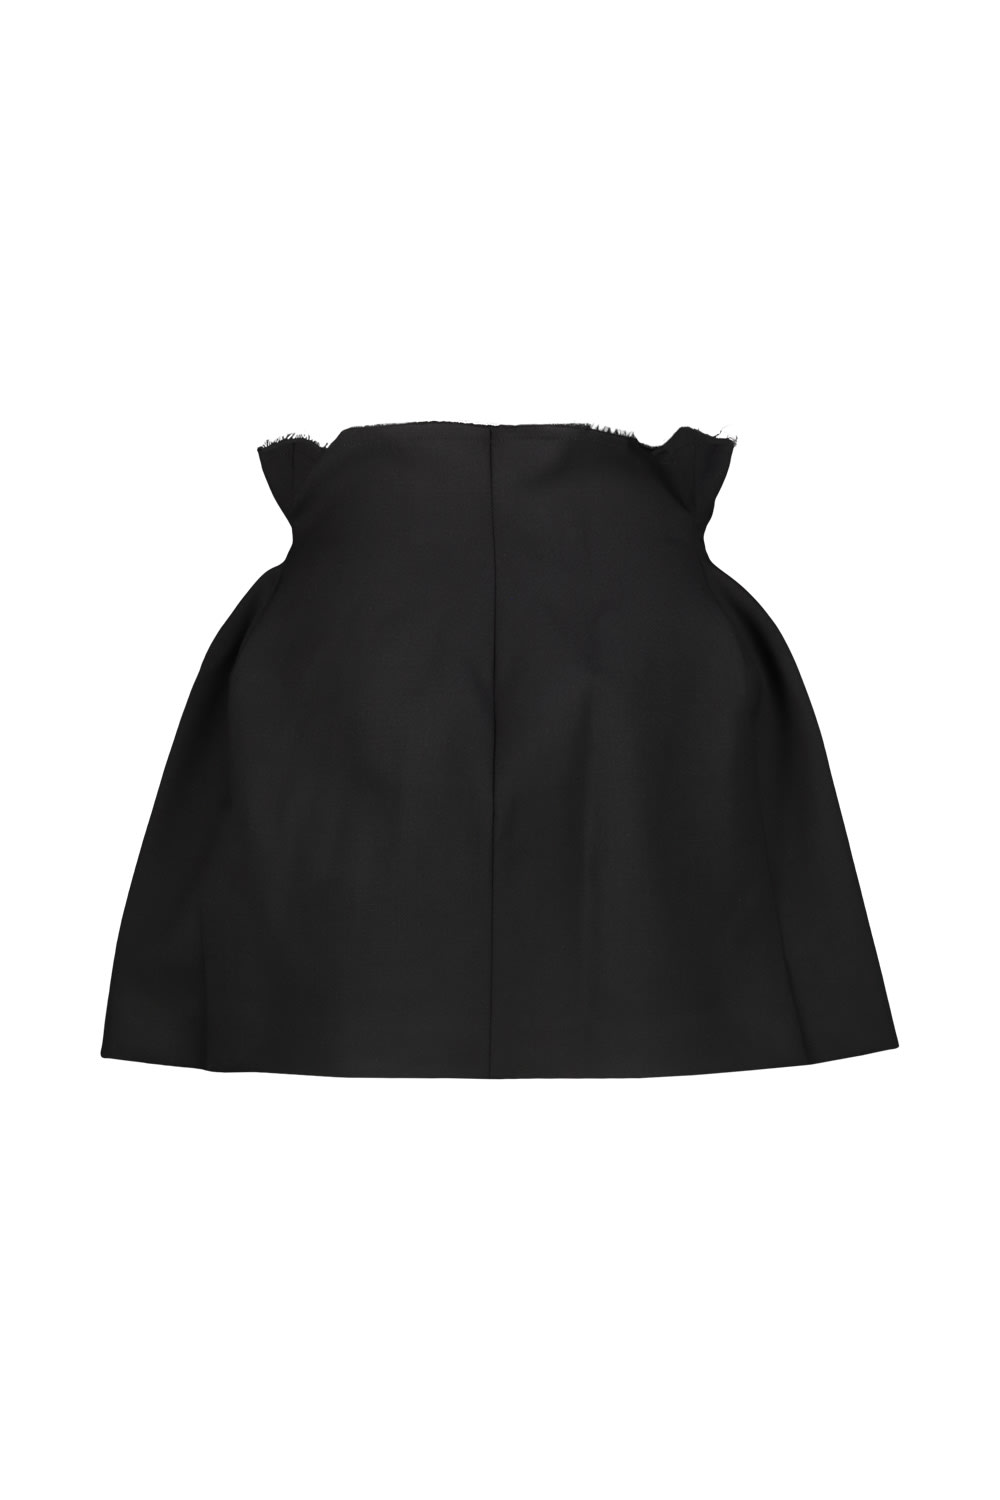 Shop Vetements Reconstructured Hourglass Skirt In Black